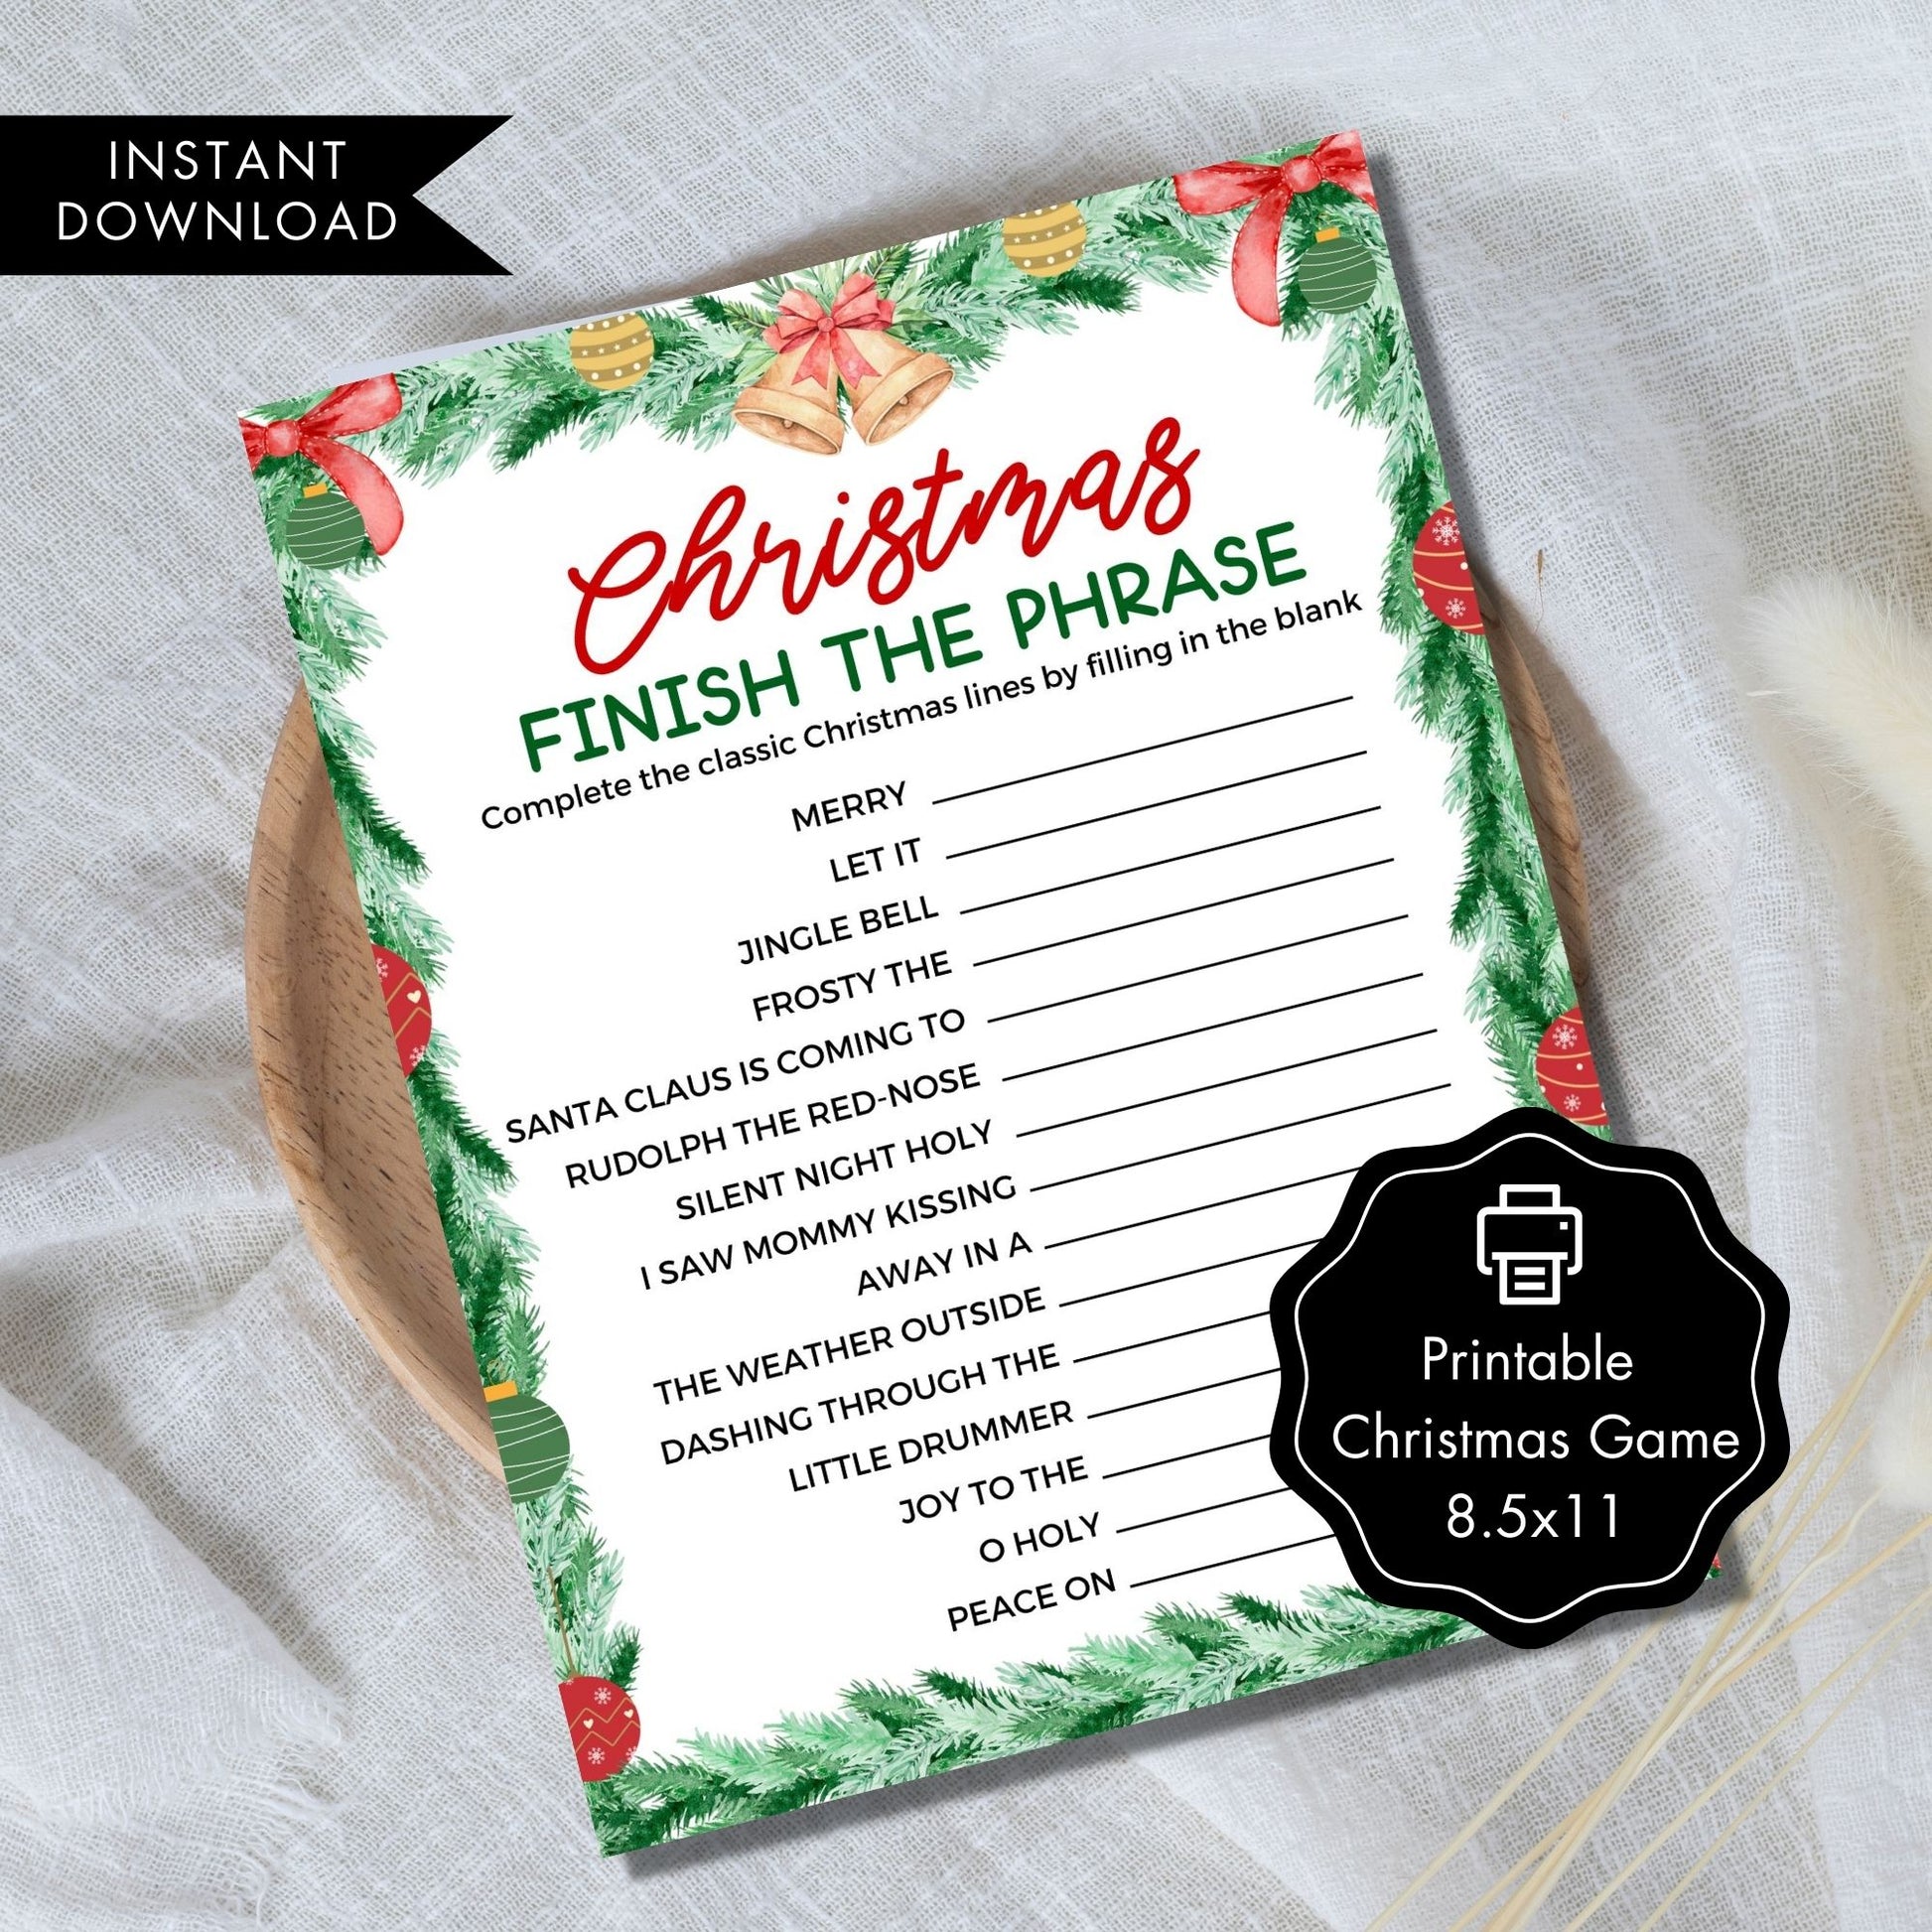 Christmas Finish the Phrase Holiday Printable Game